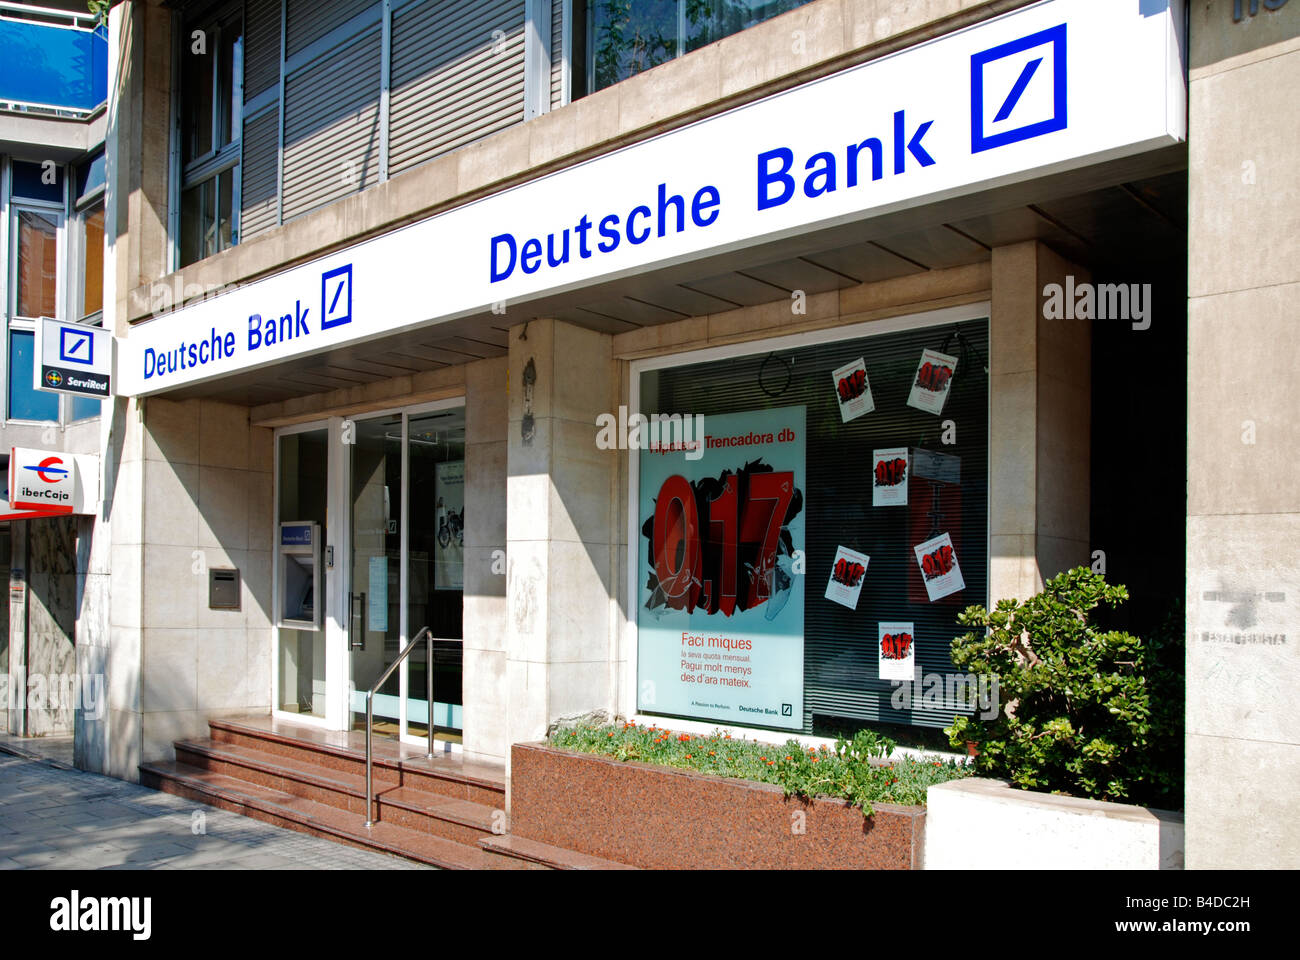 L'entrée de Deutsche bank,Tarragone, Espagne Banque D'Images